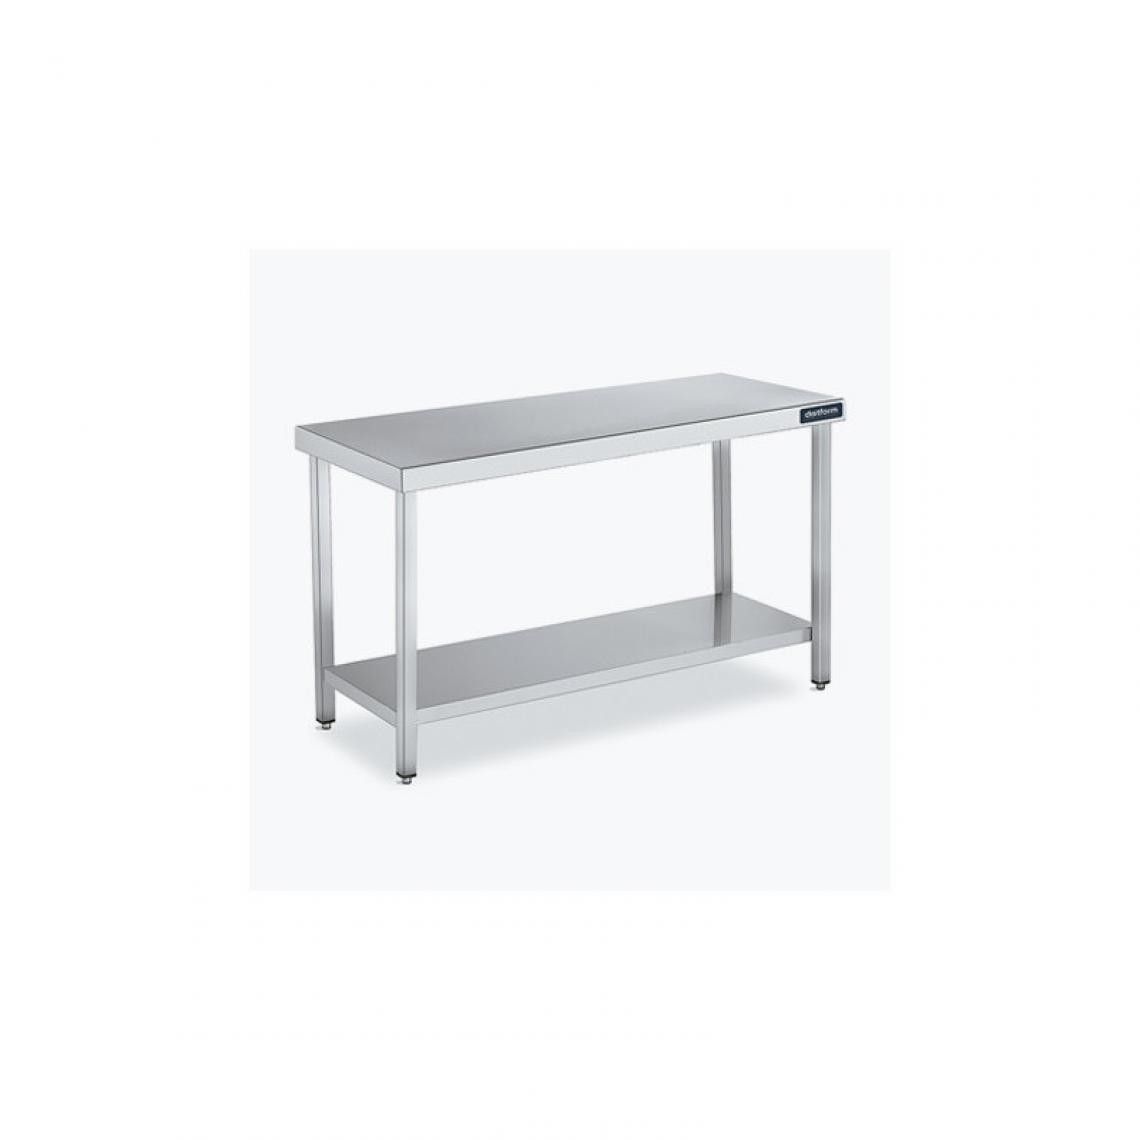 DISTFORM - Table Centrale 600x600 avec Étagère - Distform - Inox 18/10900x600x850mm - Tables à manger